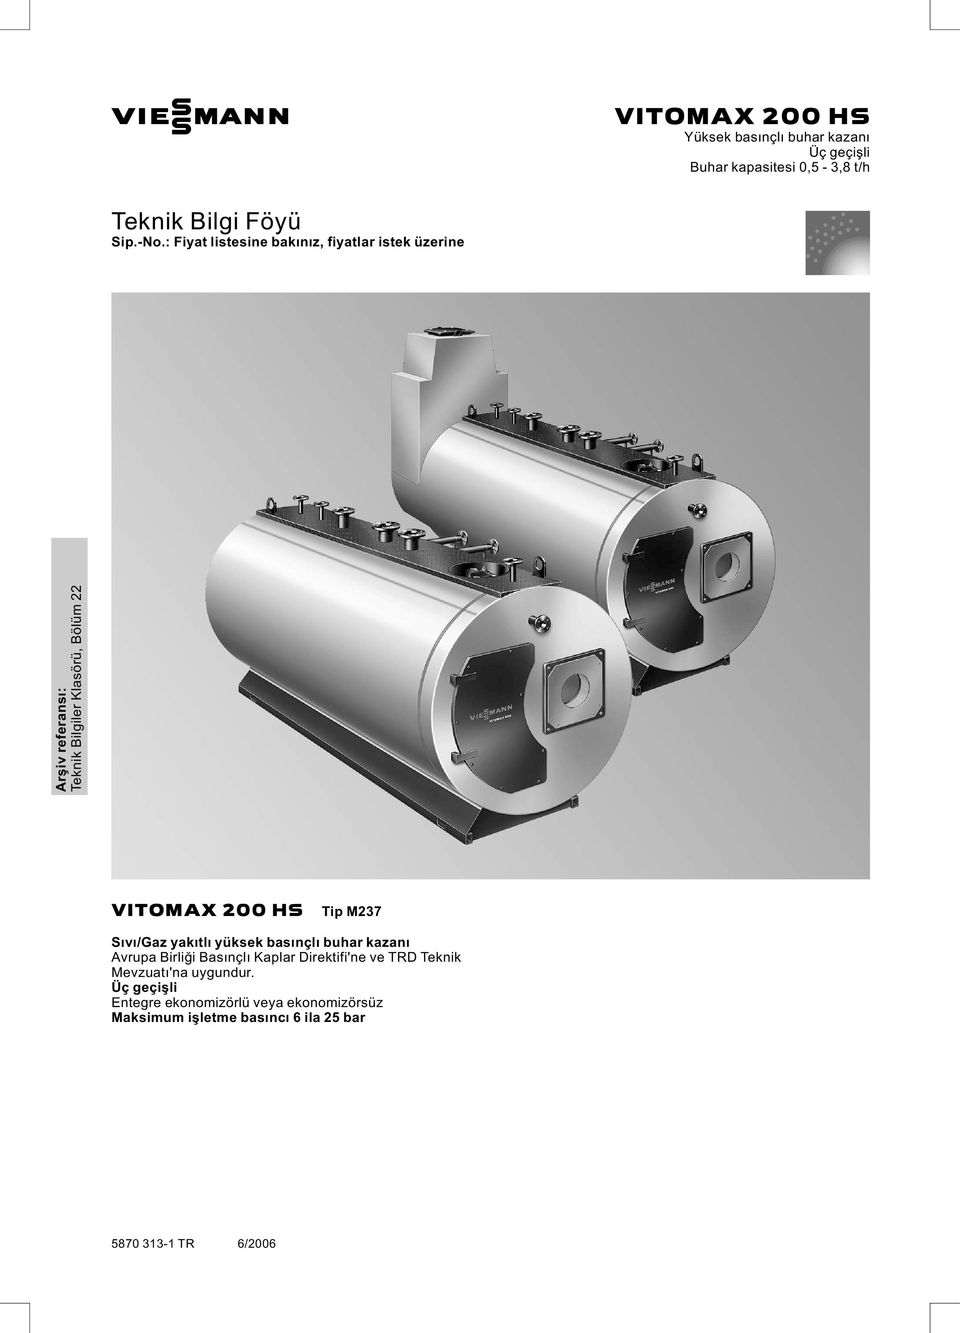 HS Tip M237 Sıvı/Gaz yakıtlı yüksek basınçlı buhar kazanı Avrupa Birliği Basınçlı Kaplar Direktifi'ne ve TRD Teknik